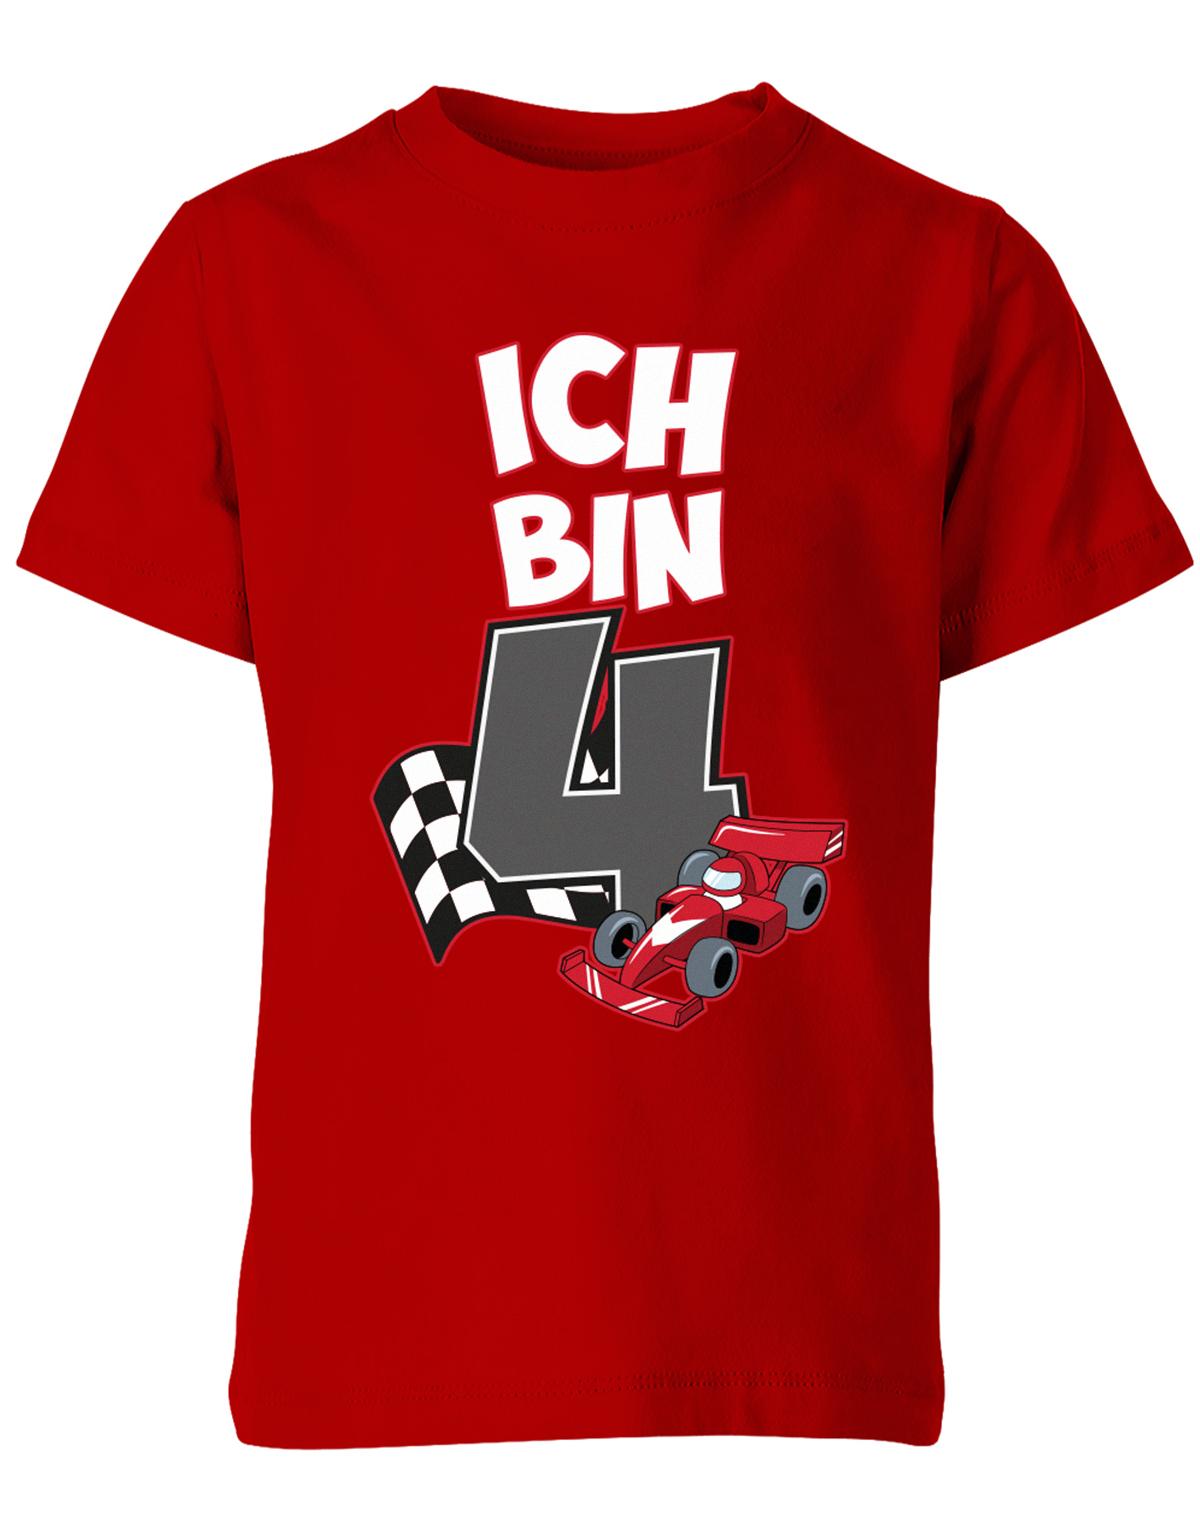 ich-bin-4-autorennen-rennwagen-geburtstag-rennfahrer-kinder-shirt-rot